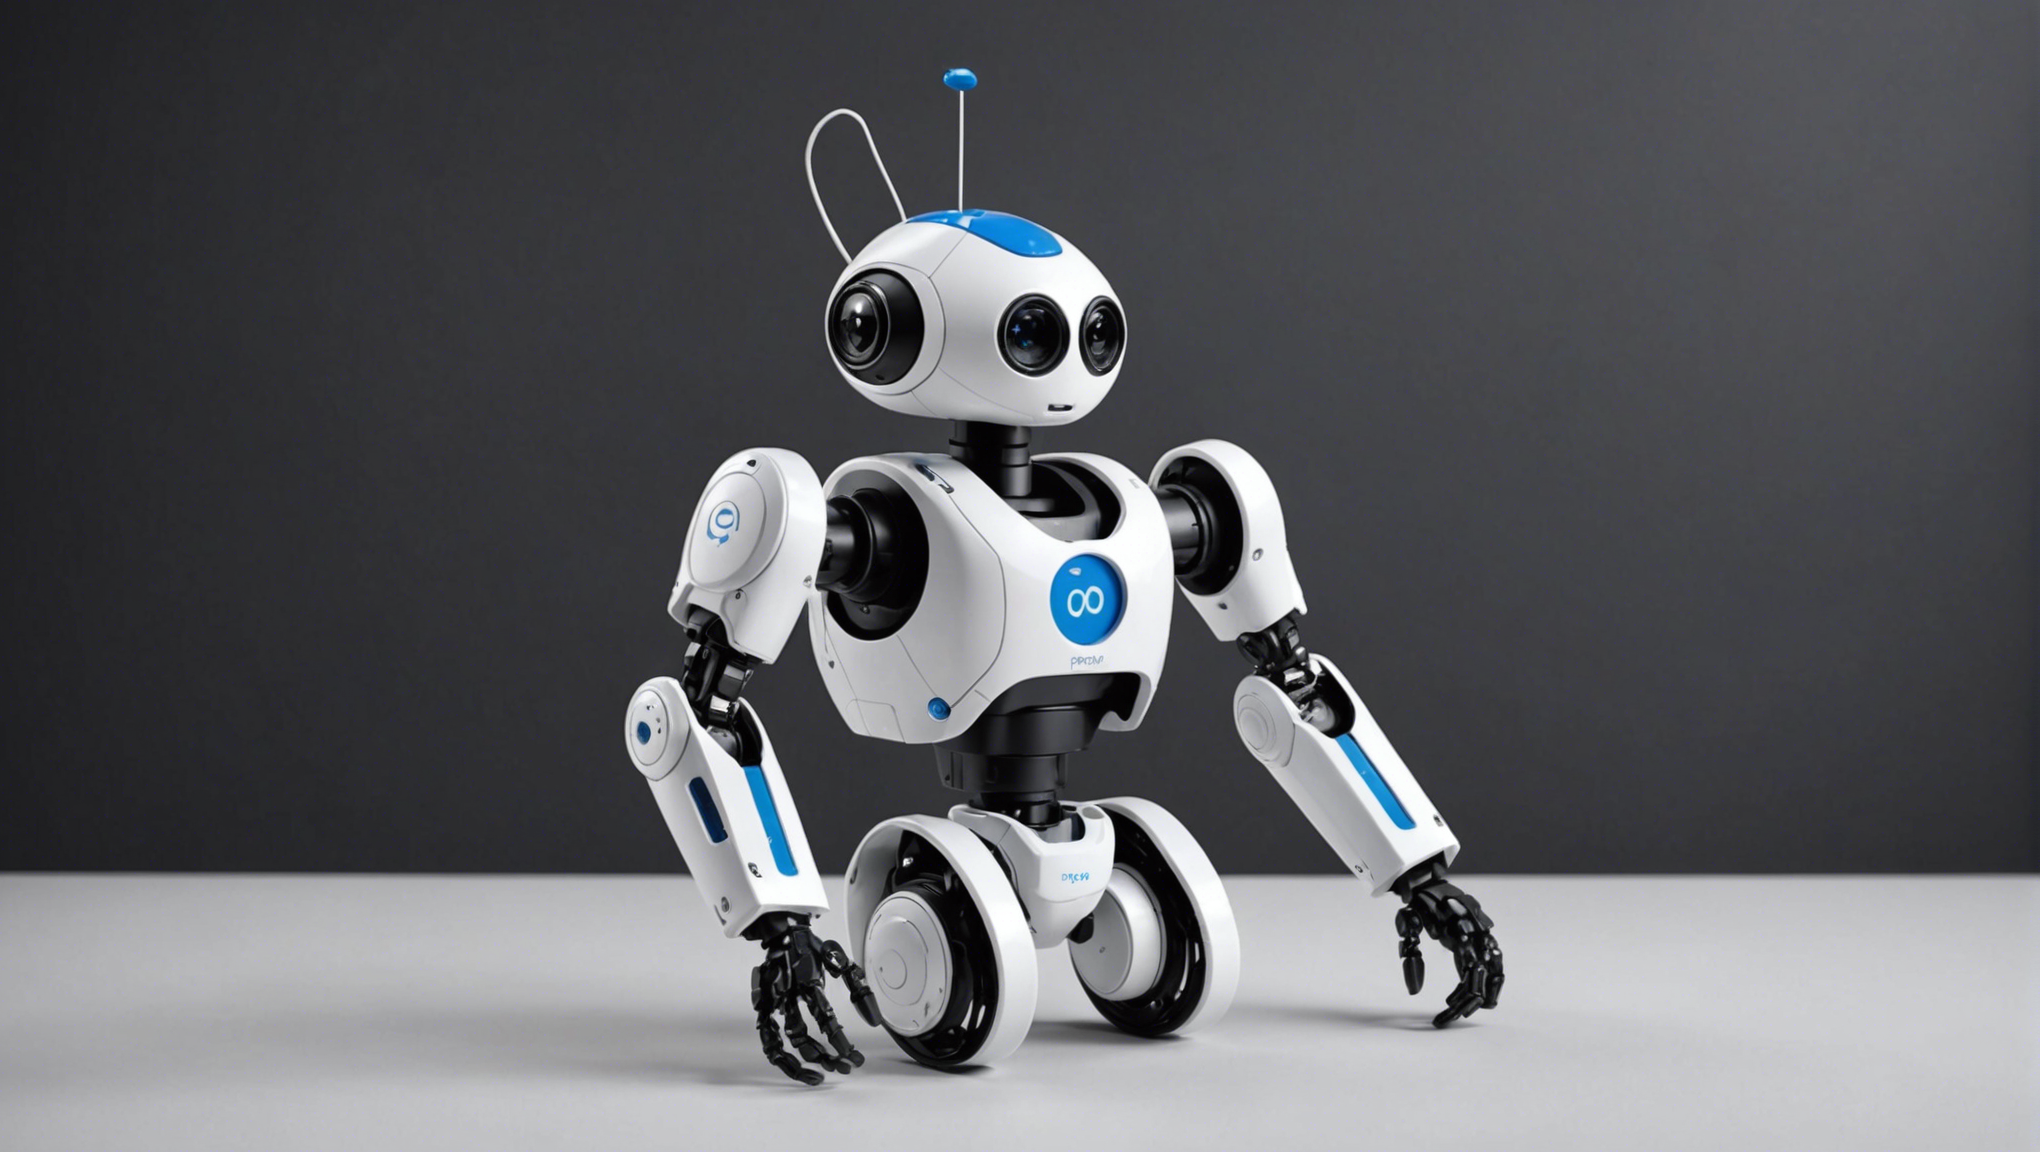 découvrez poppy, le robot humanoïde imprimé en 3d idéal pour s'amuser et apprendre la robotique !